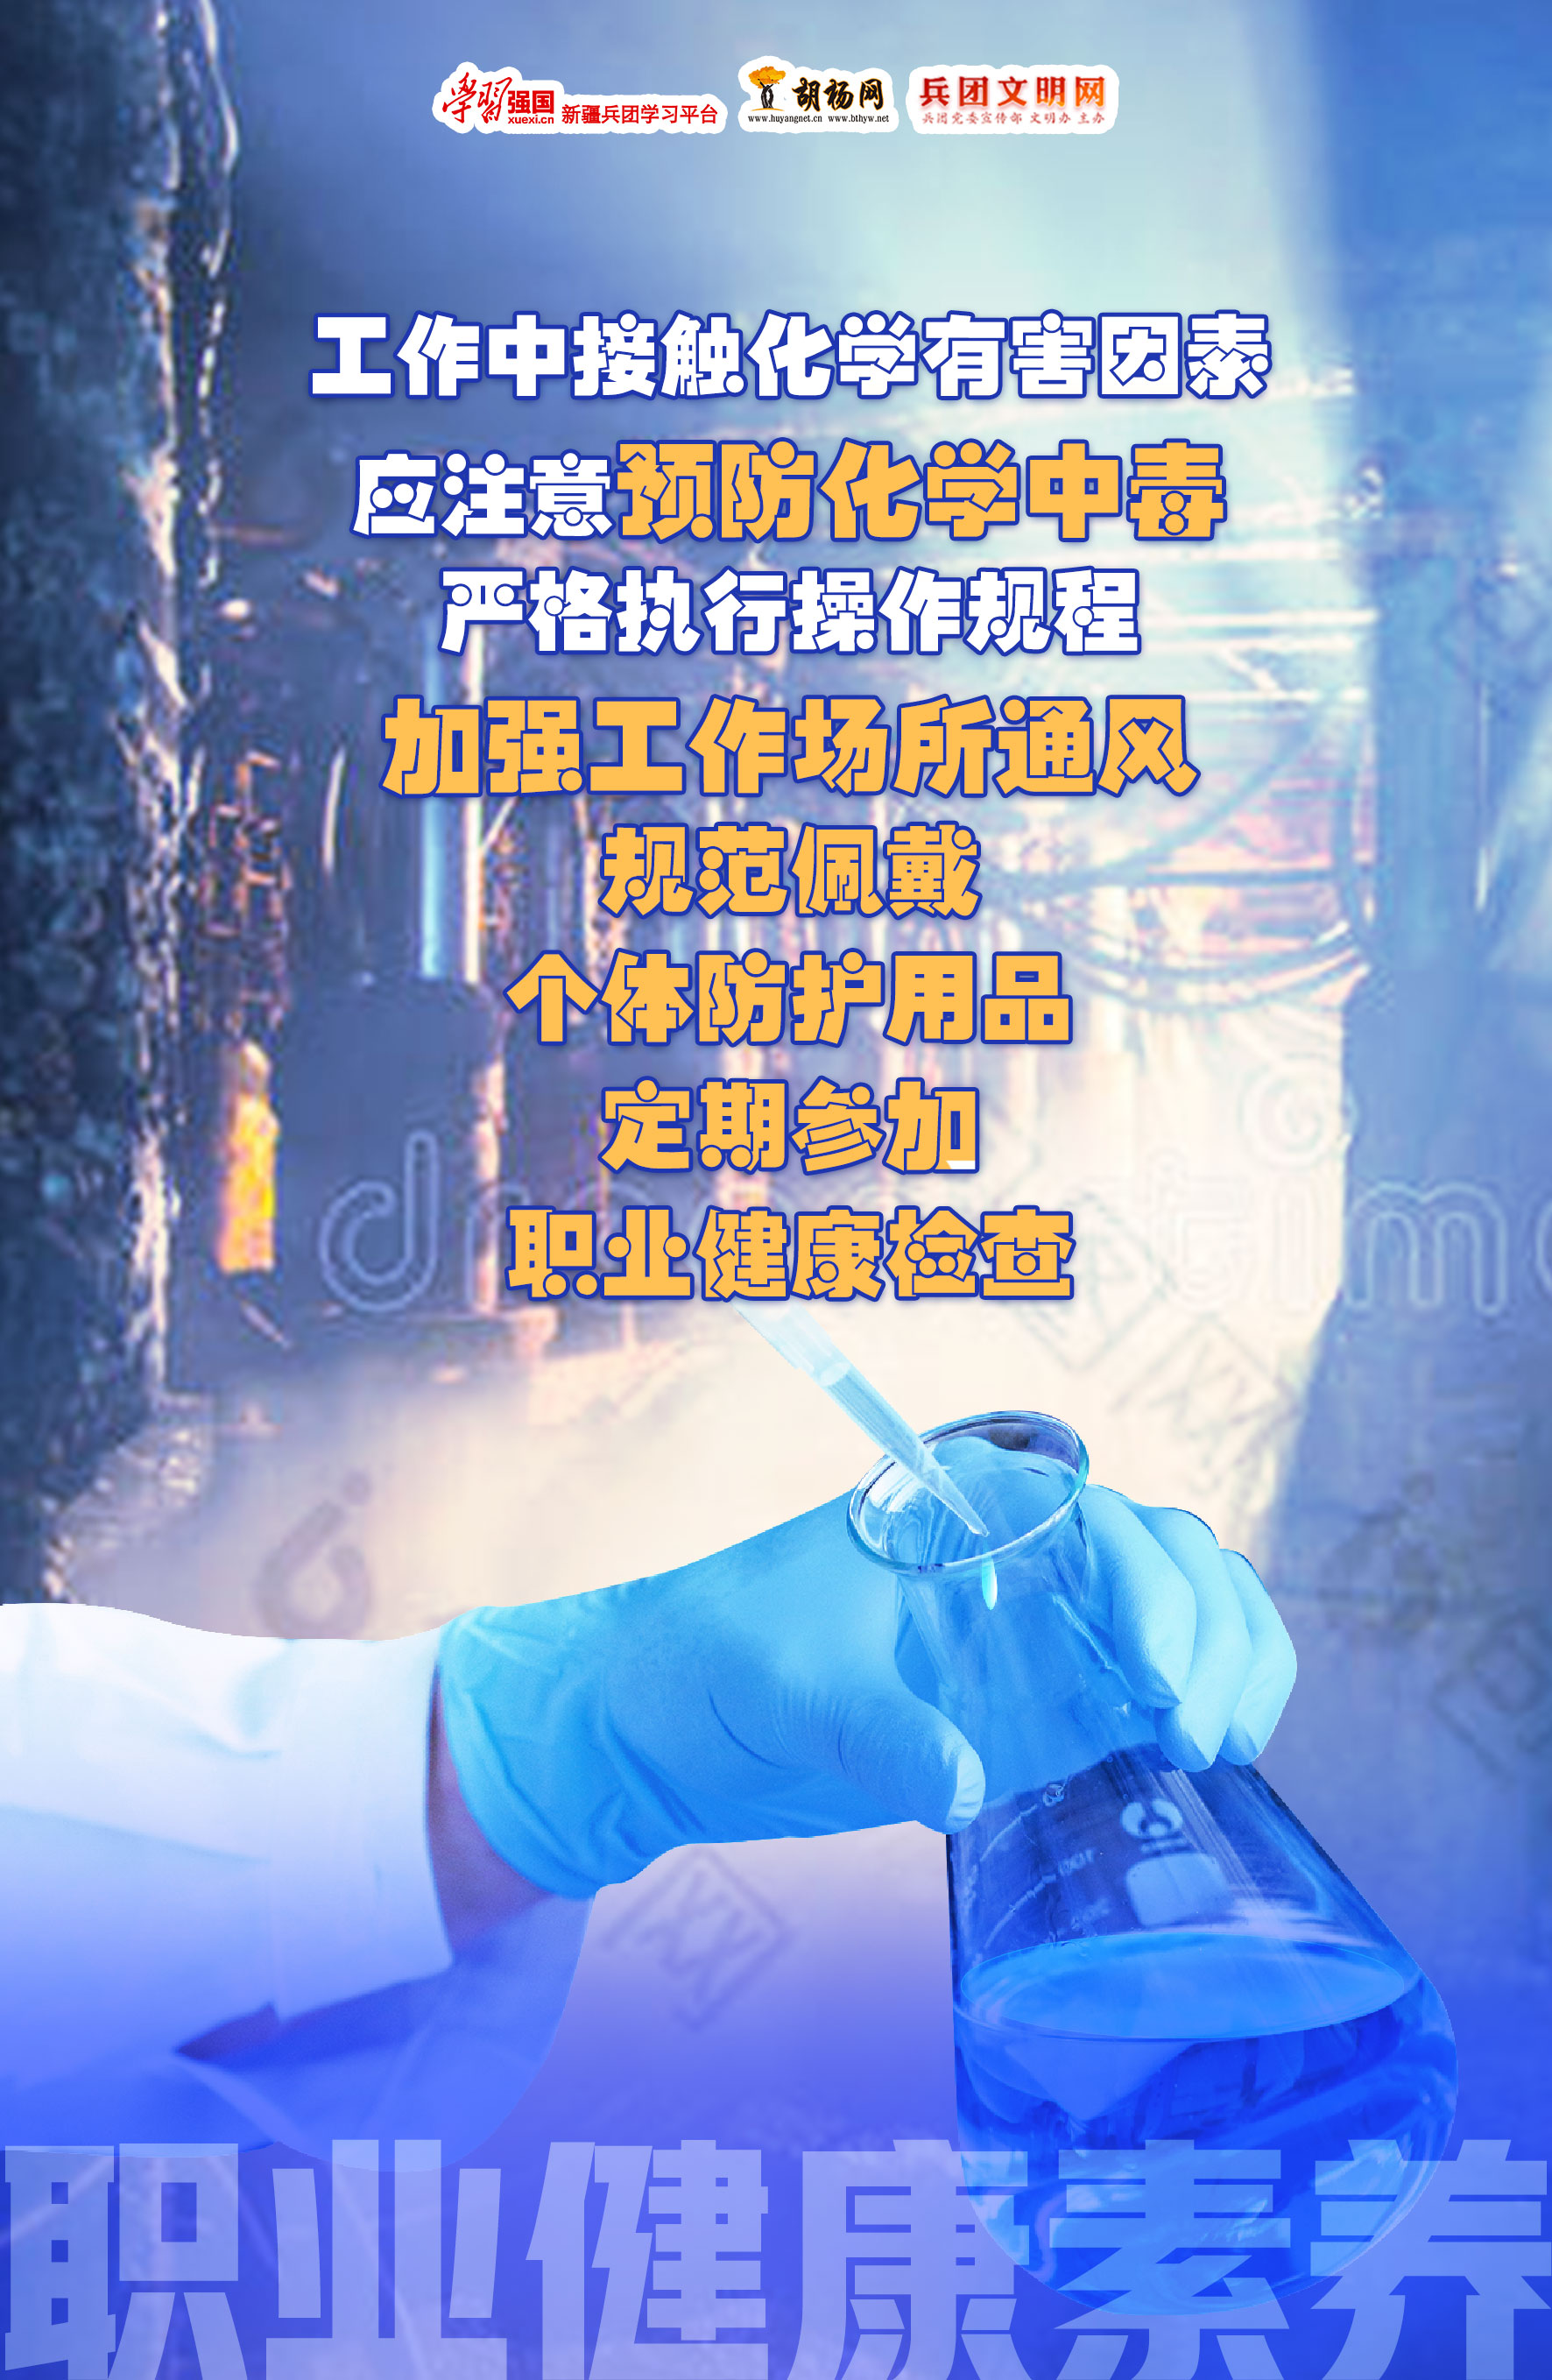 胡杨原创海报 | 职业健康保护基本知识（一）